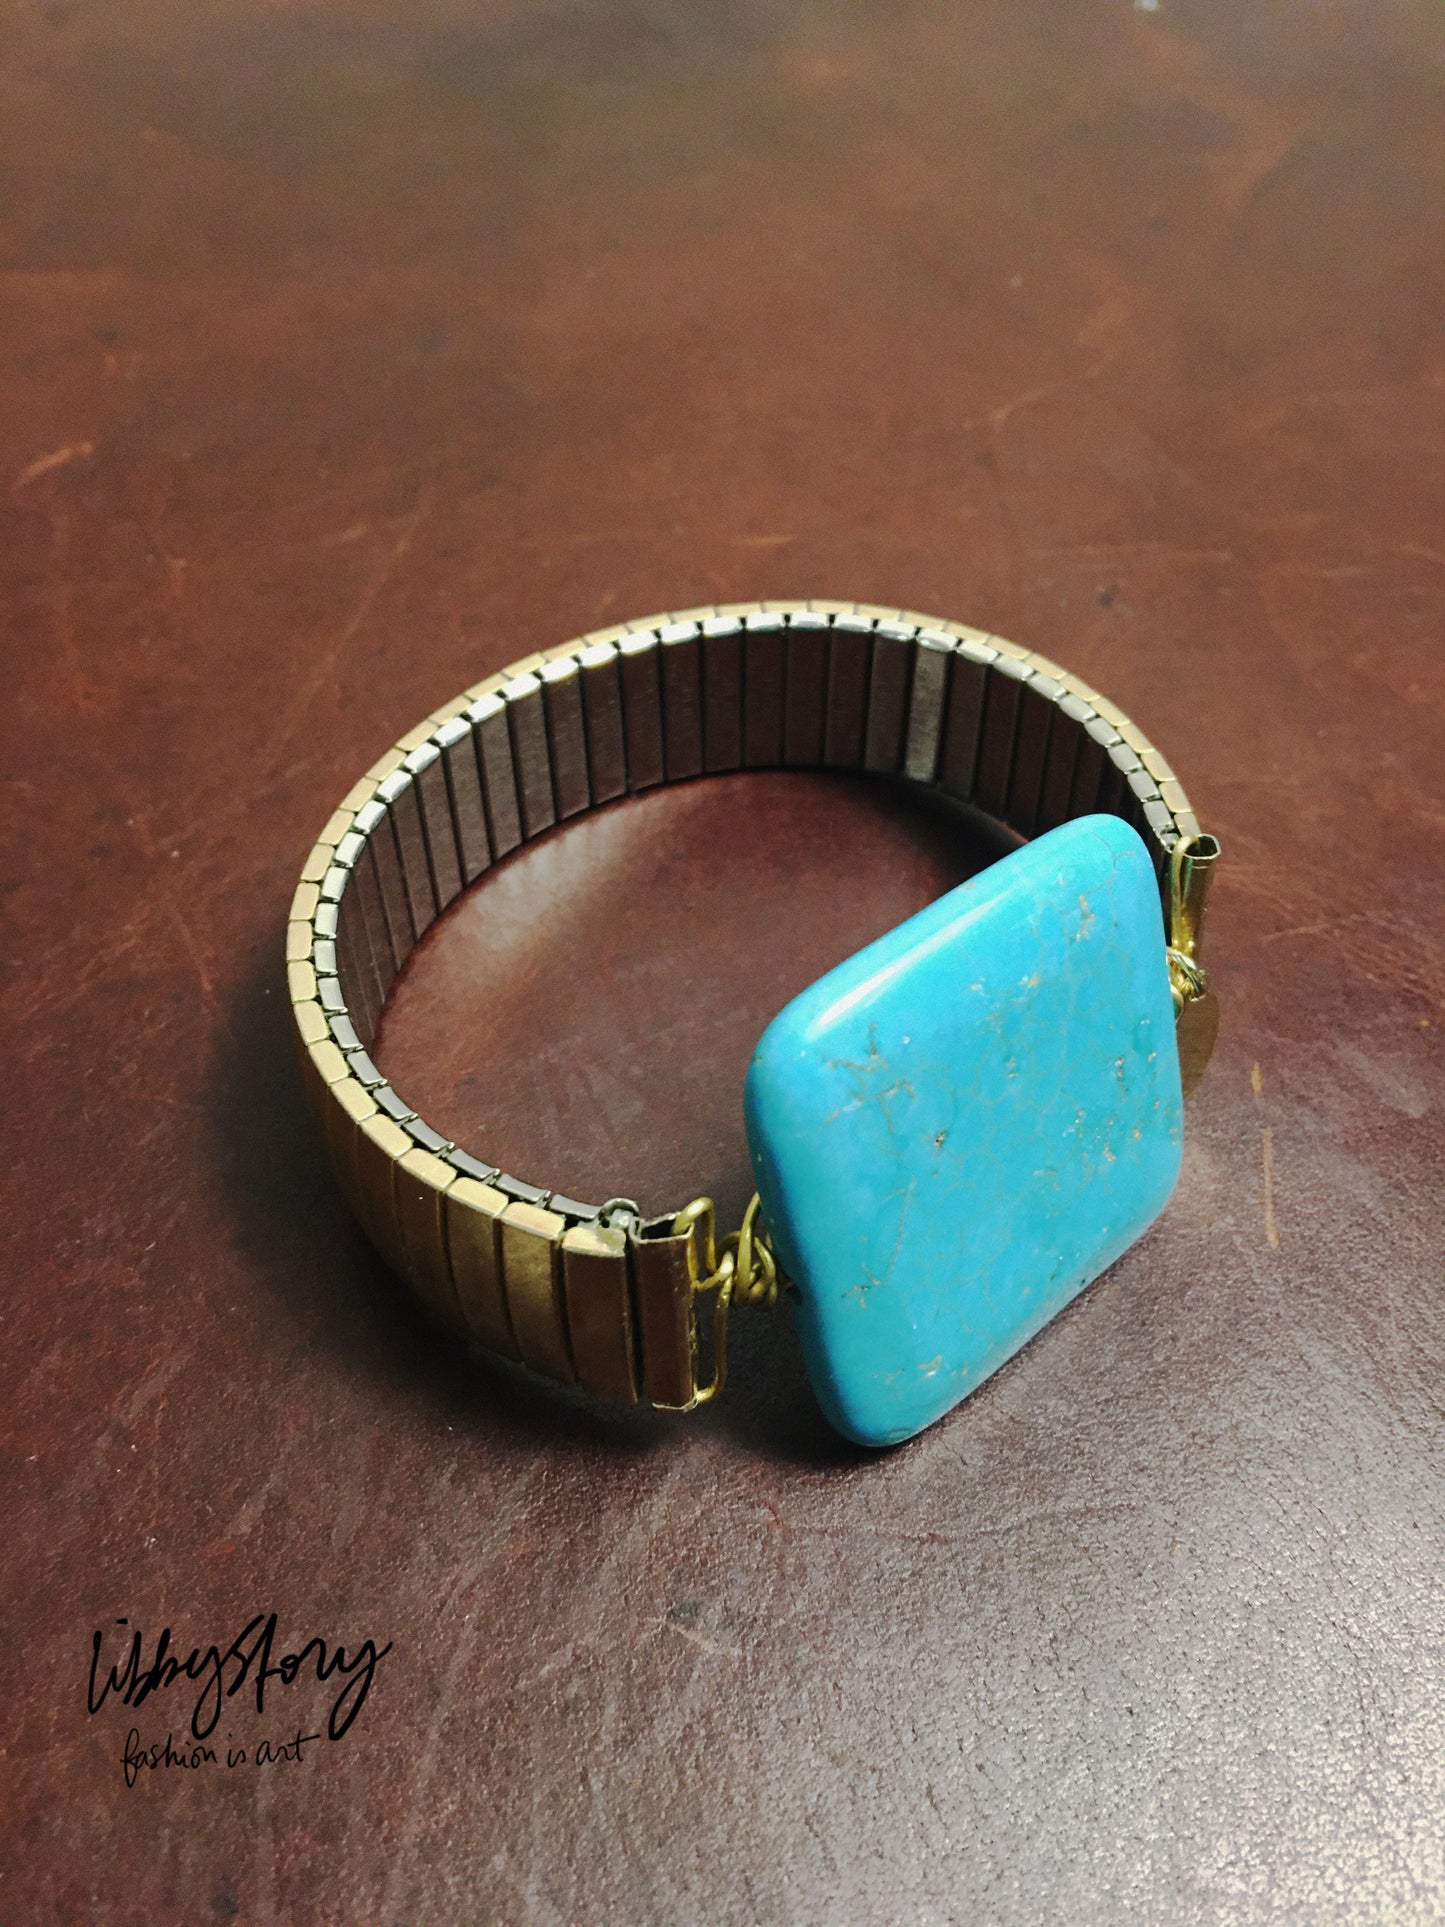 LS Upcycled Vintage Watch Band & Turquoise Stone Bracelet